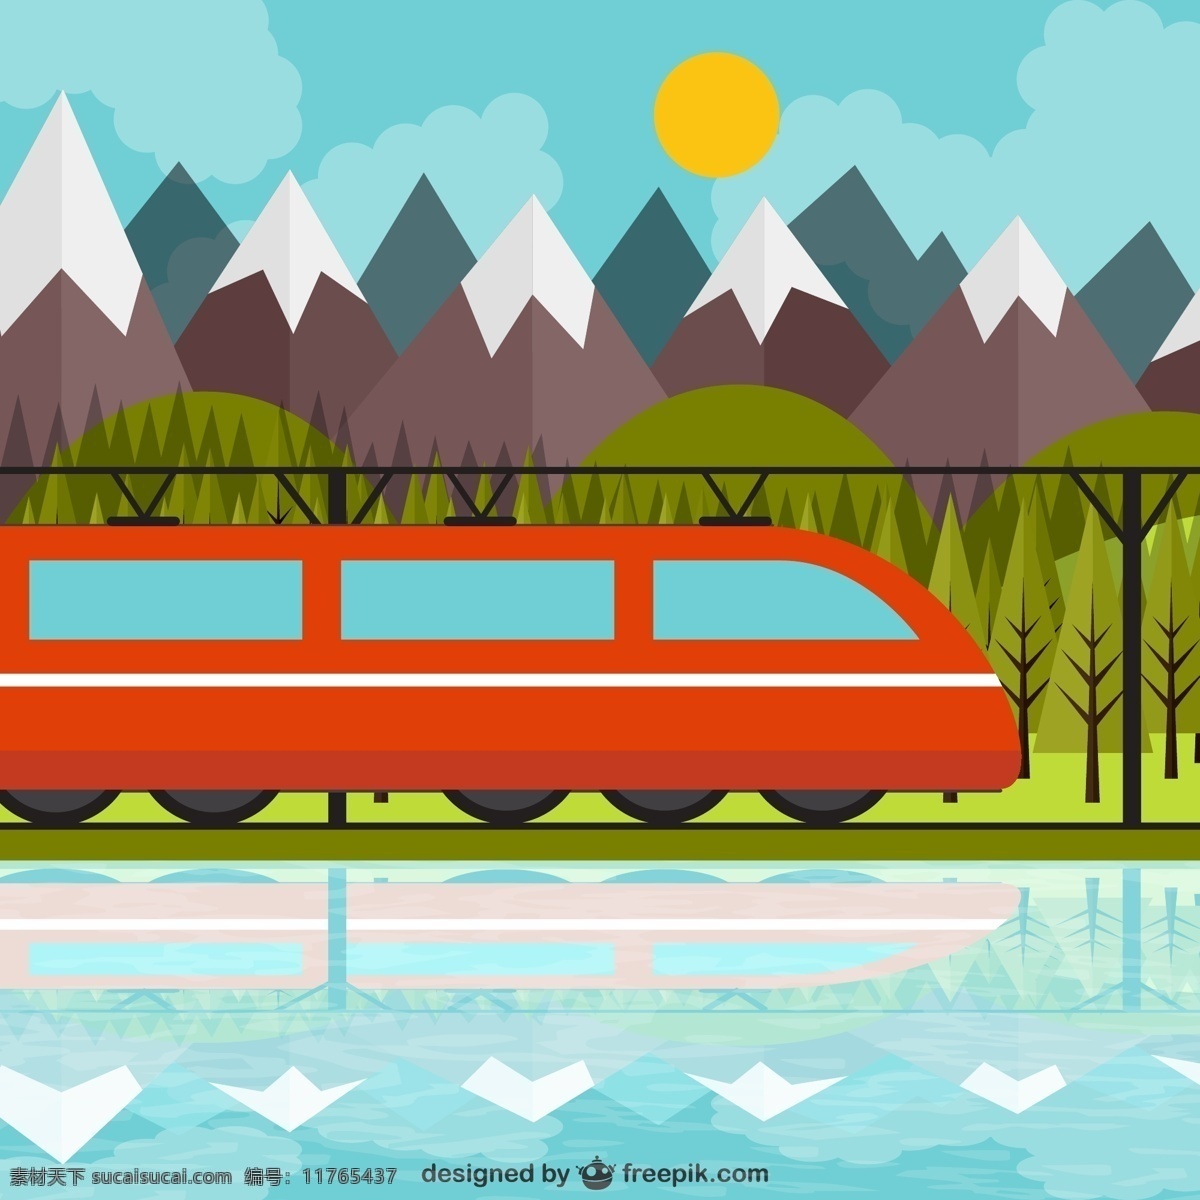 精美 列车 沿途 风景 矢量 云 太阳火车 树 河流 雪山 有轨 电车 青色 天蓝色